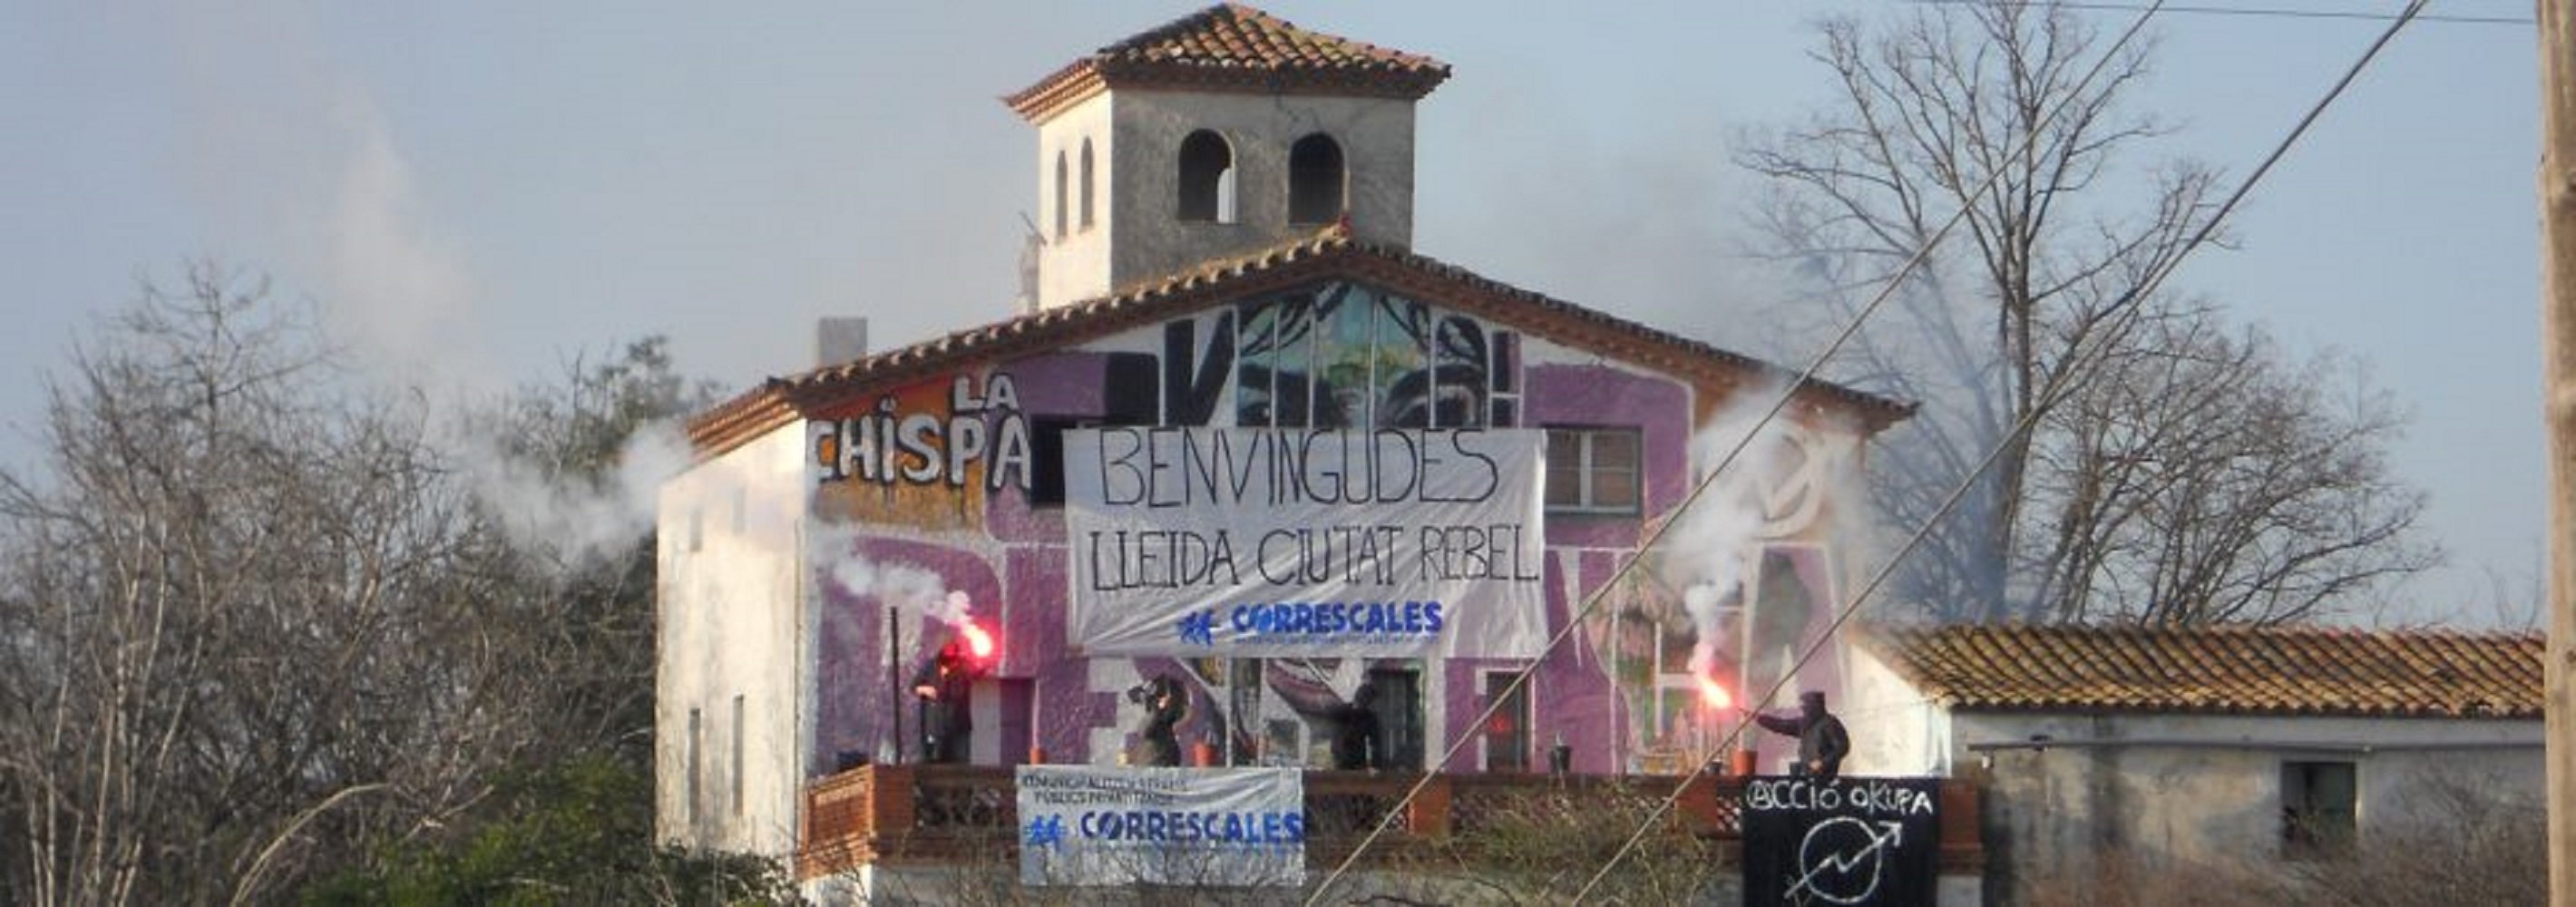 Els Mossos desallotgen el centre social okupat 'La Chispa' de Lleida